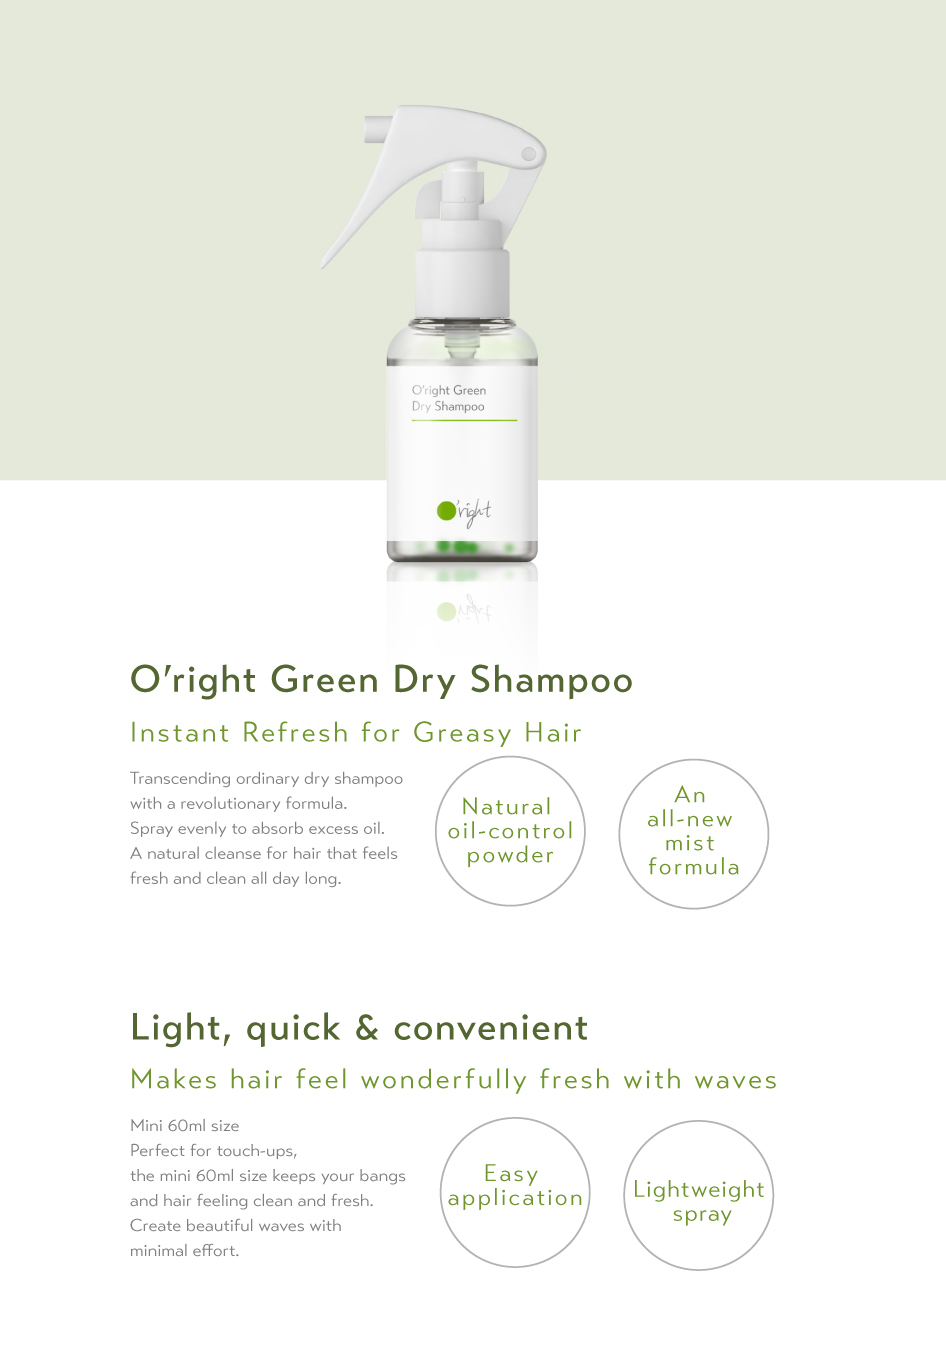 O'right Green Dry Shampoo